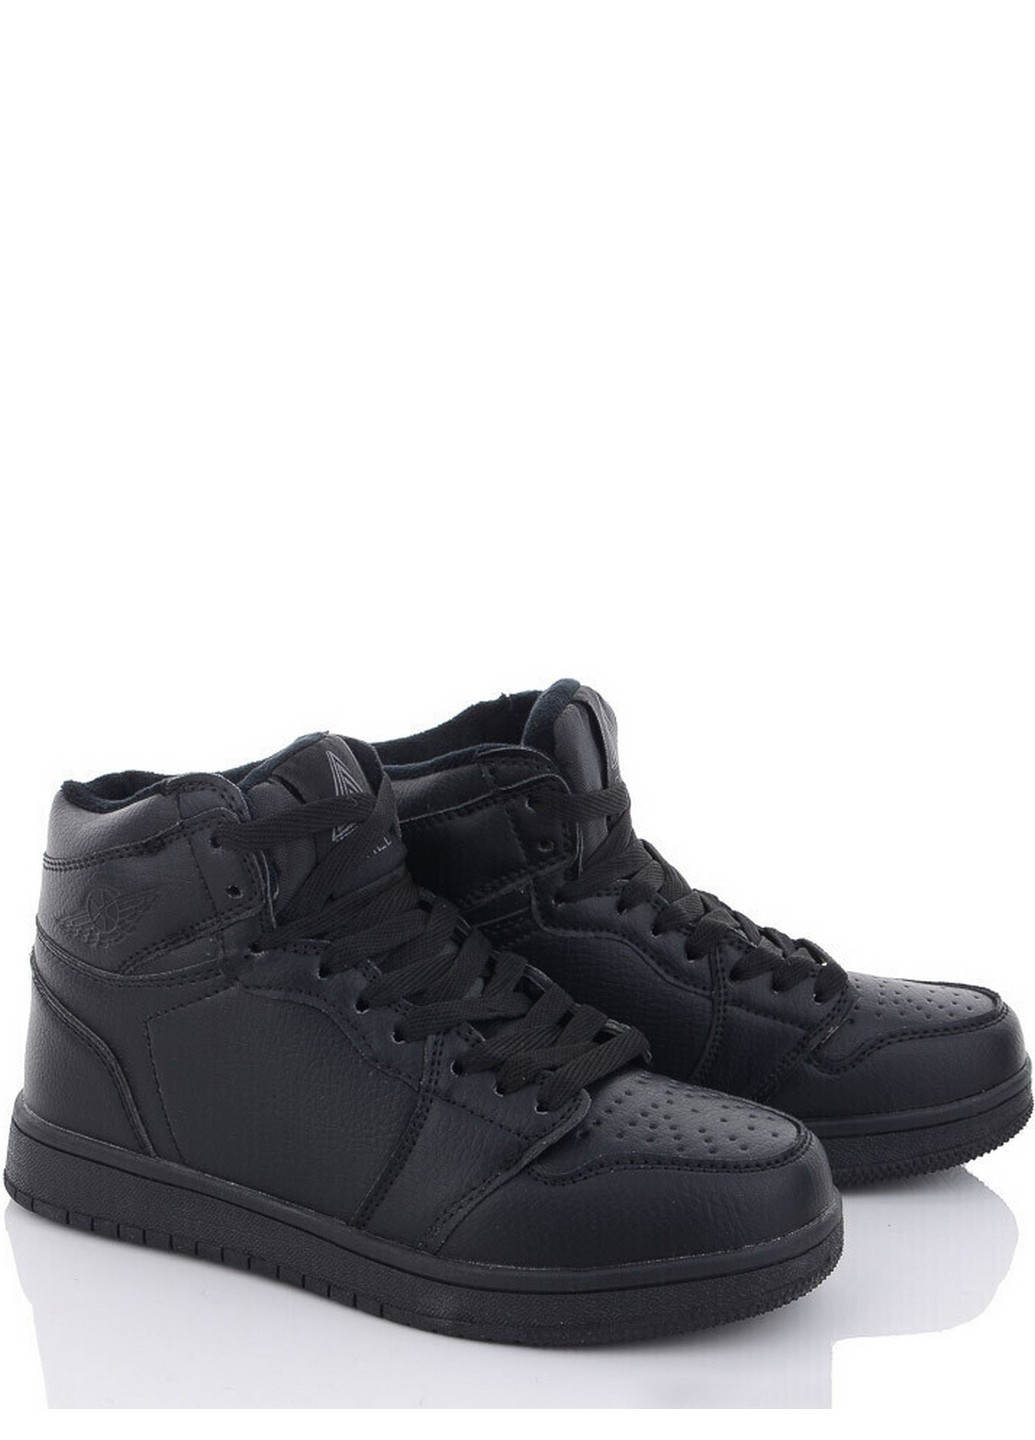 Черные зимние зимние ботинки h1030-1 Stilli